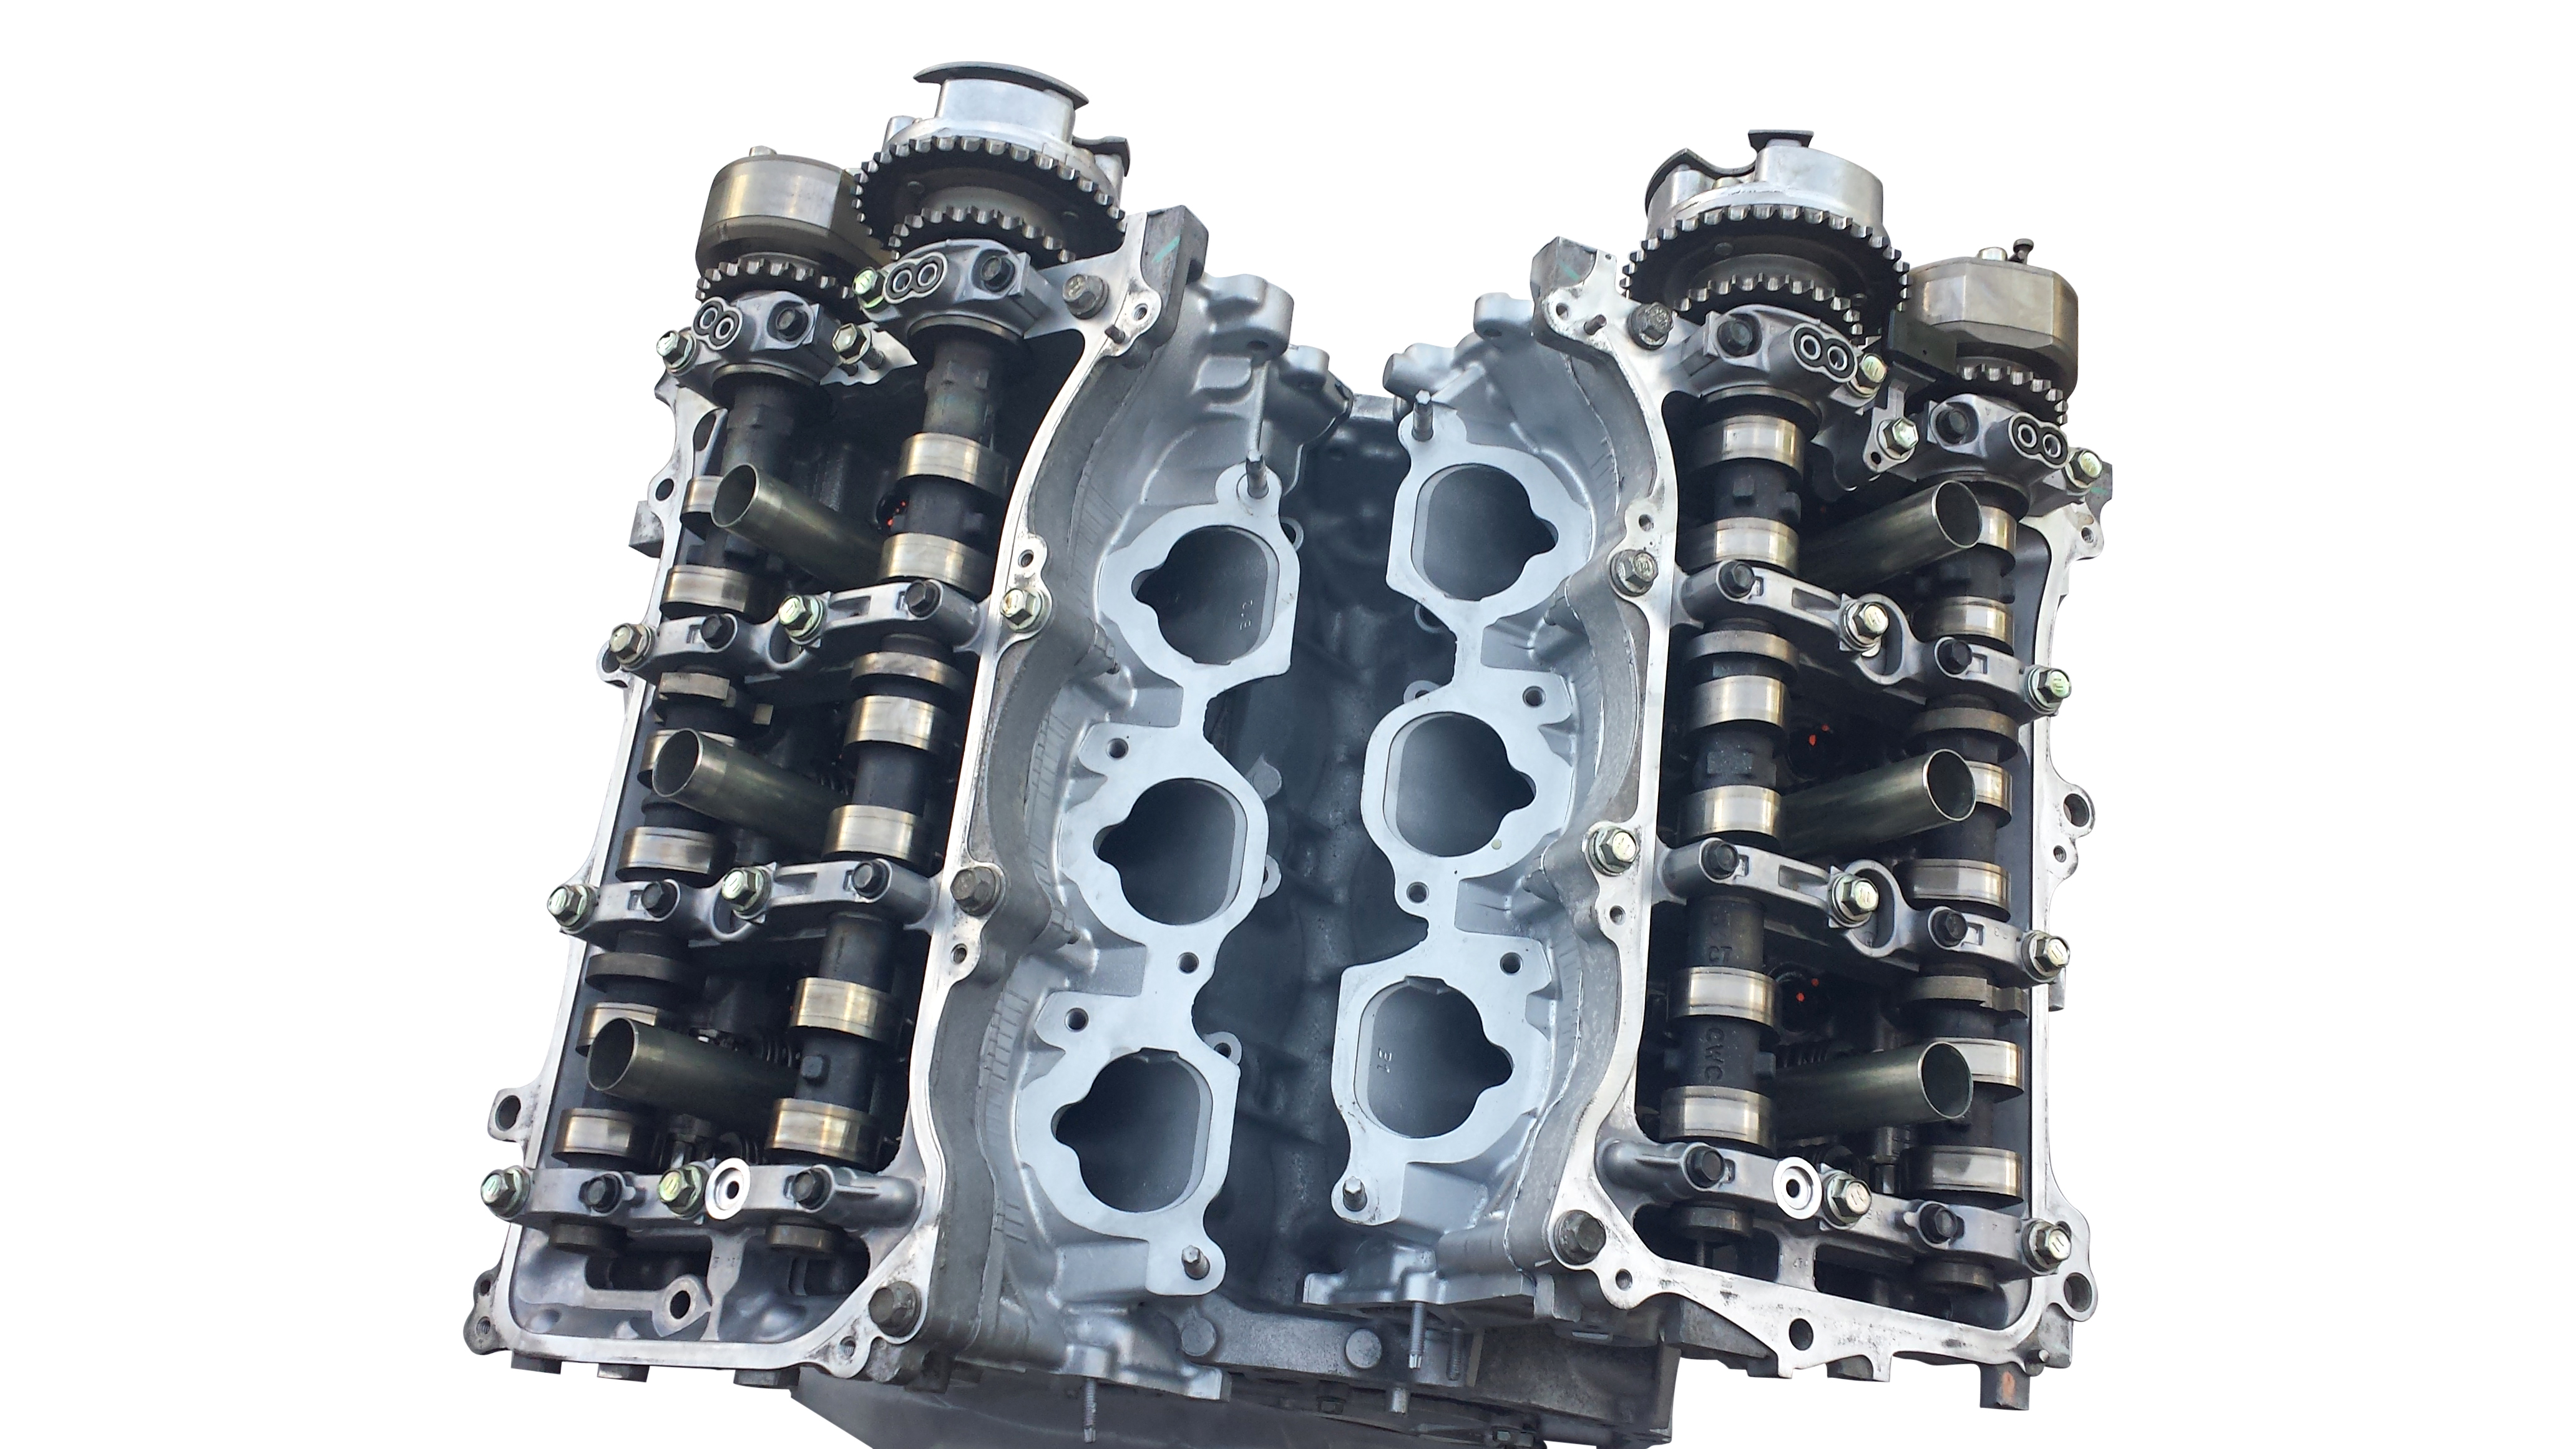 Rebuilt 2GR FE engine for Lexus ES300